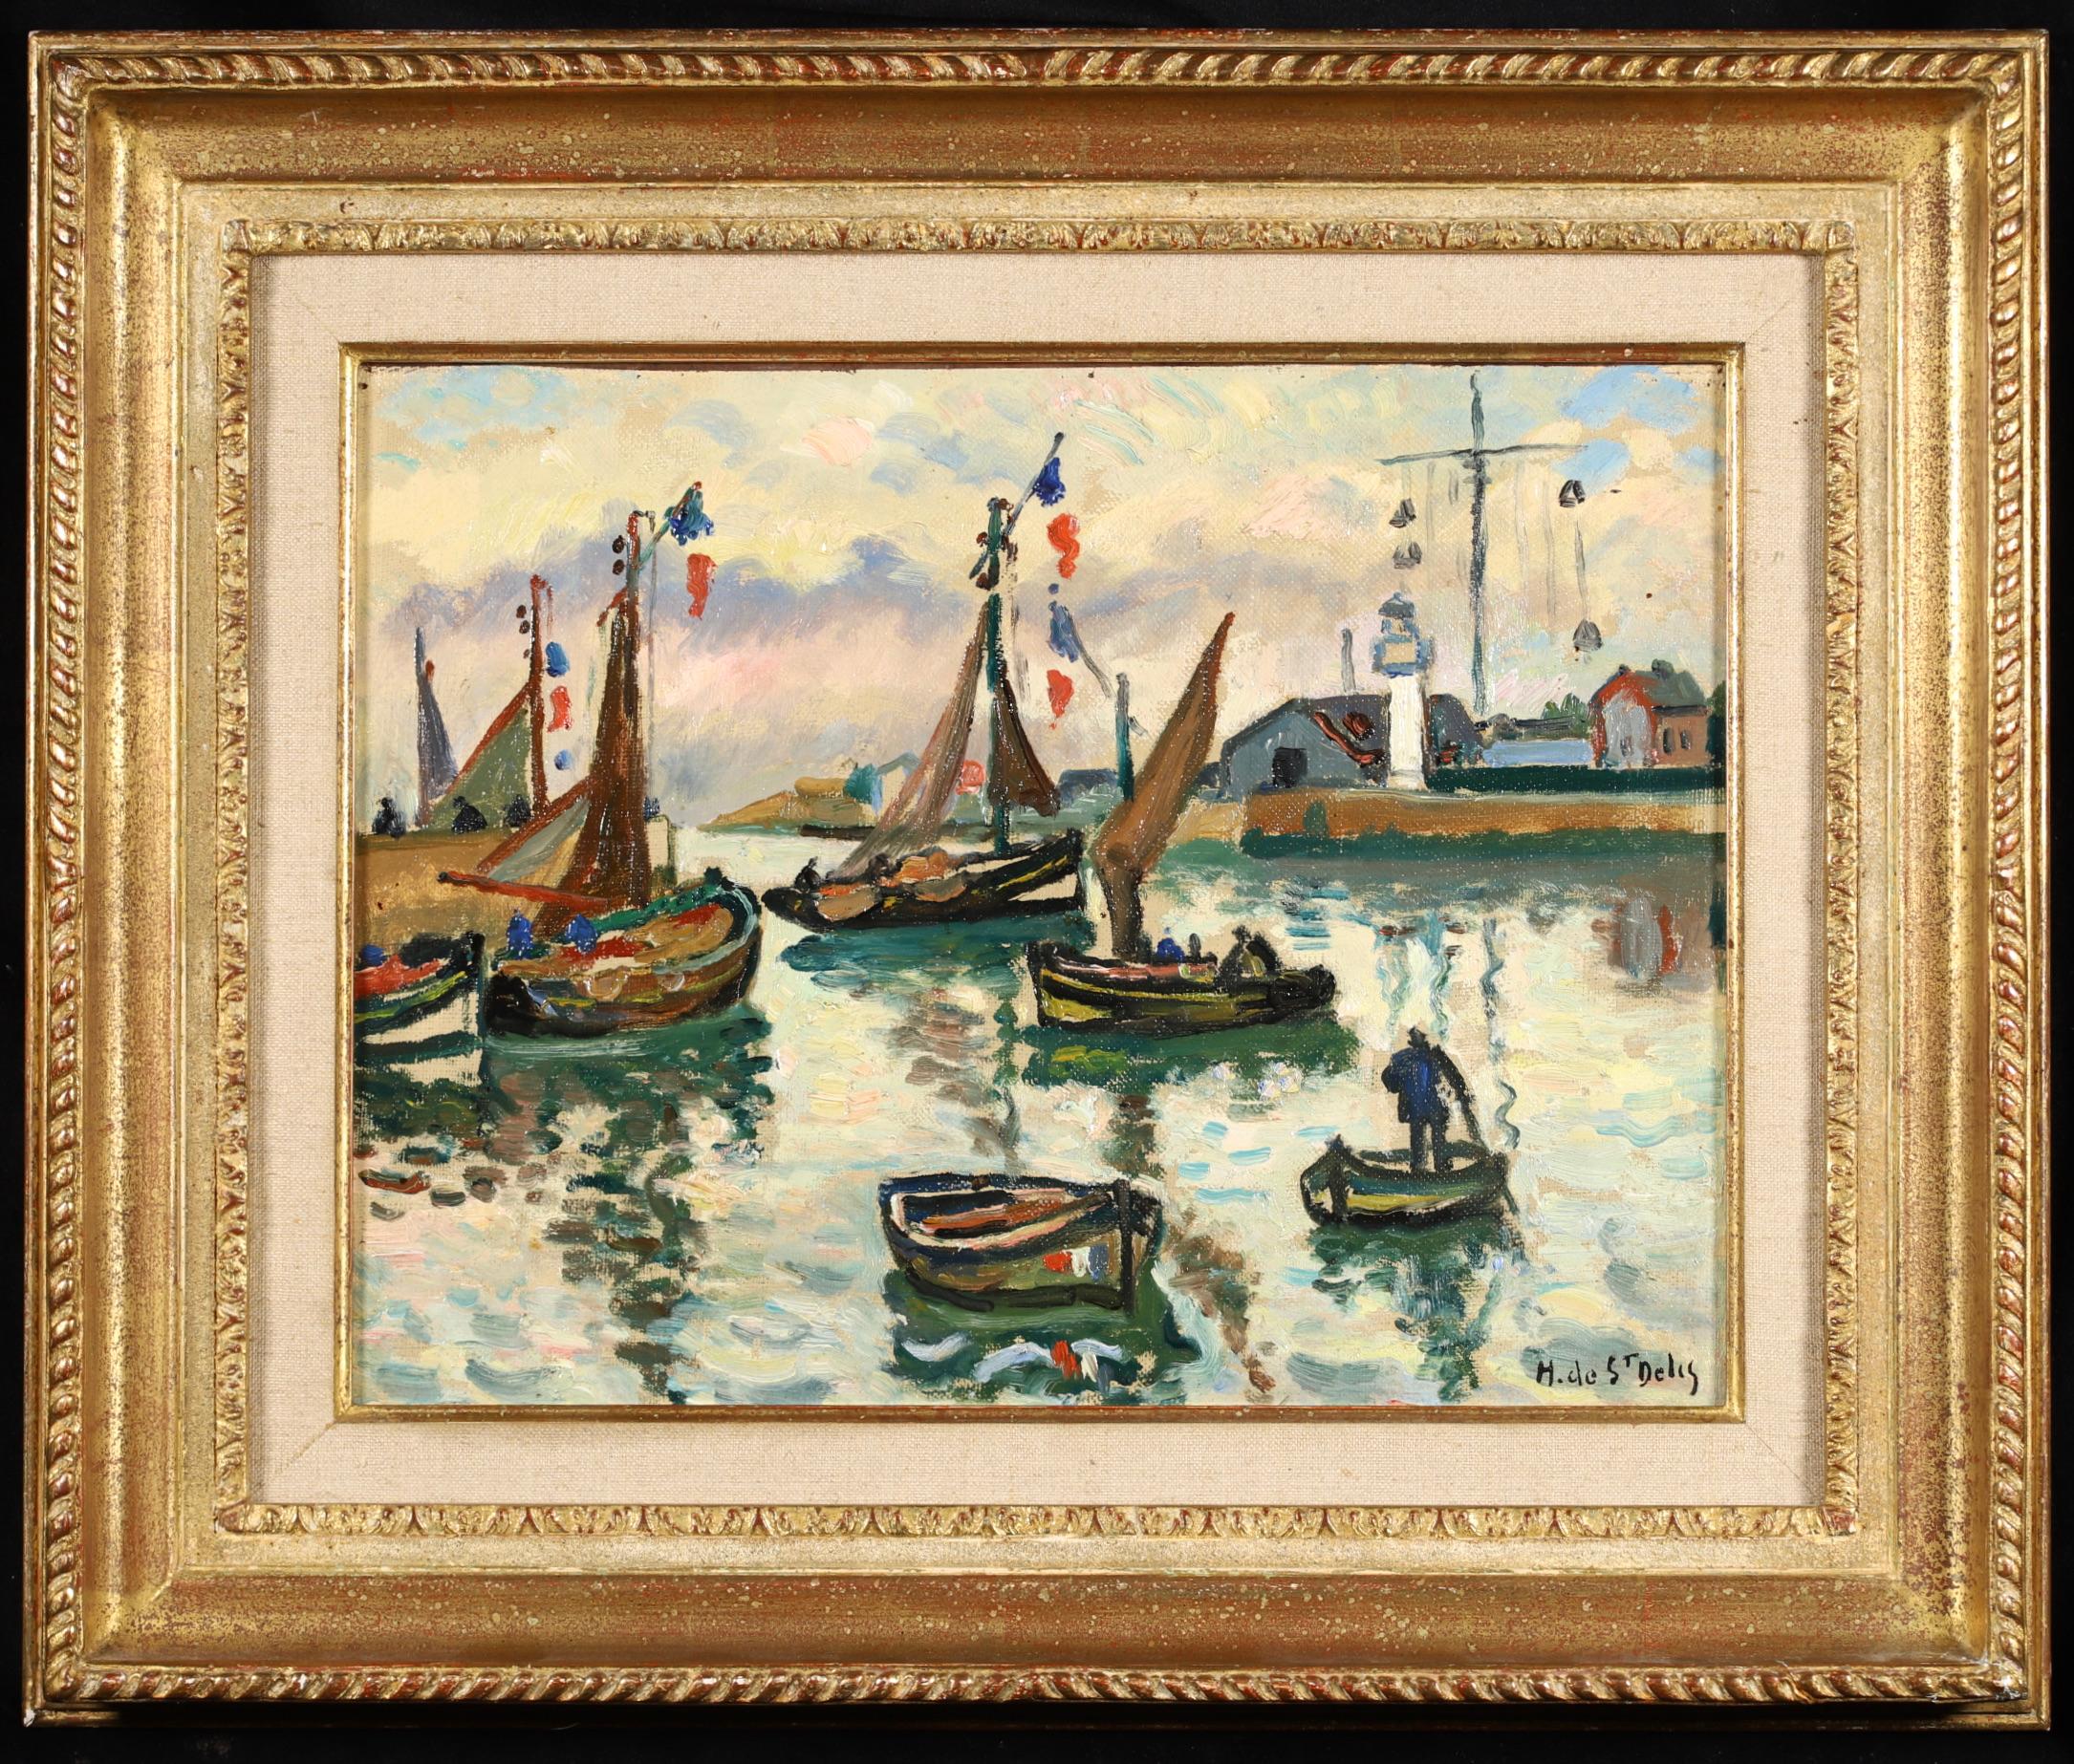 Henri Liénard de Saint-Délis Landscape Painting - The Harbour at Honfleur - Post Impressionist Seascape Oil - Henri de Saint-Delis